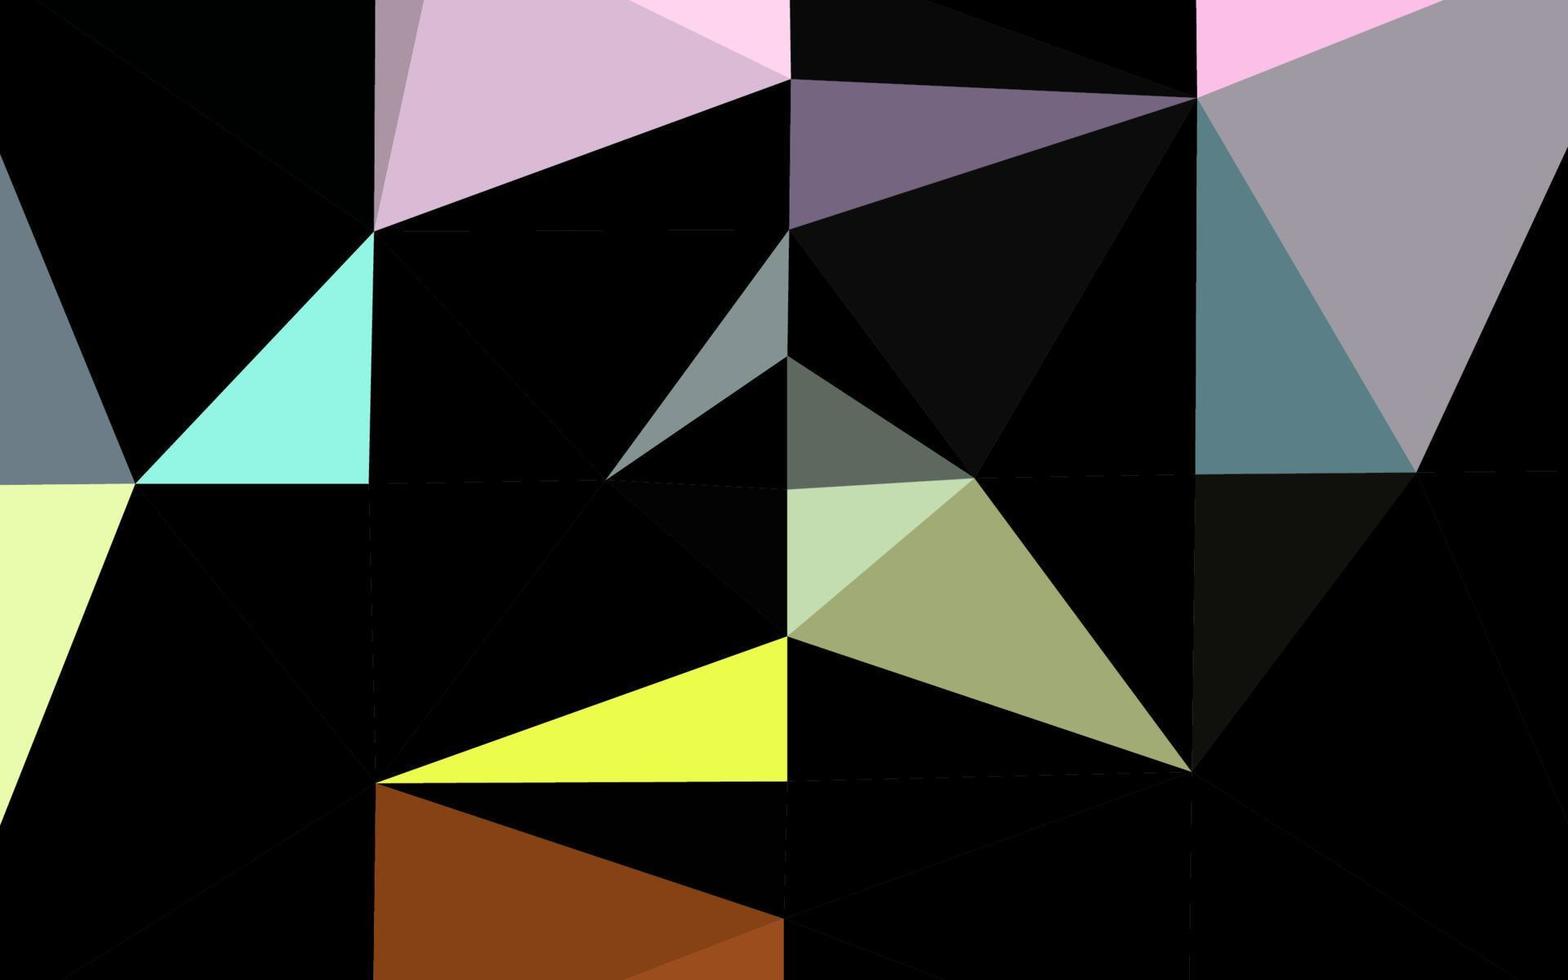 ljus mångfärgad, regnbåge vektor lysande triangulärt mönster.